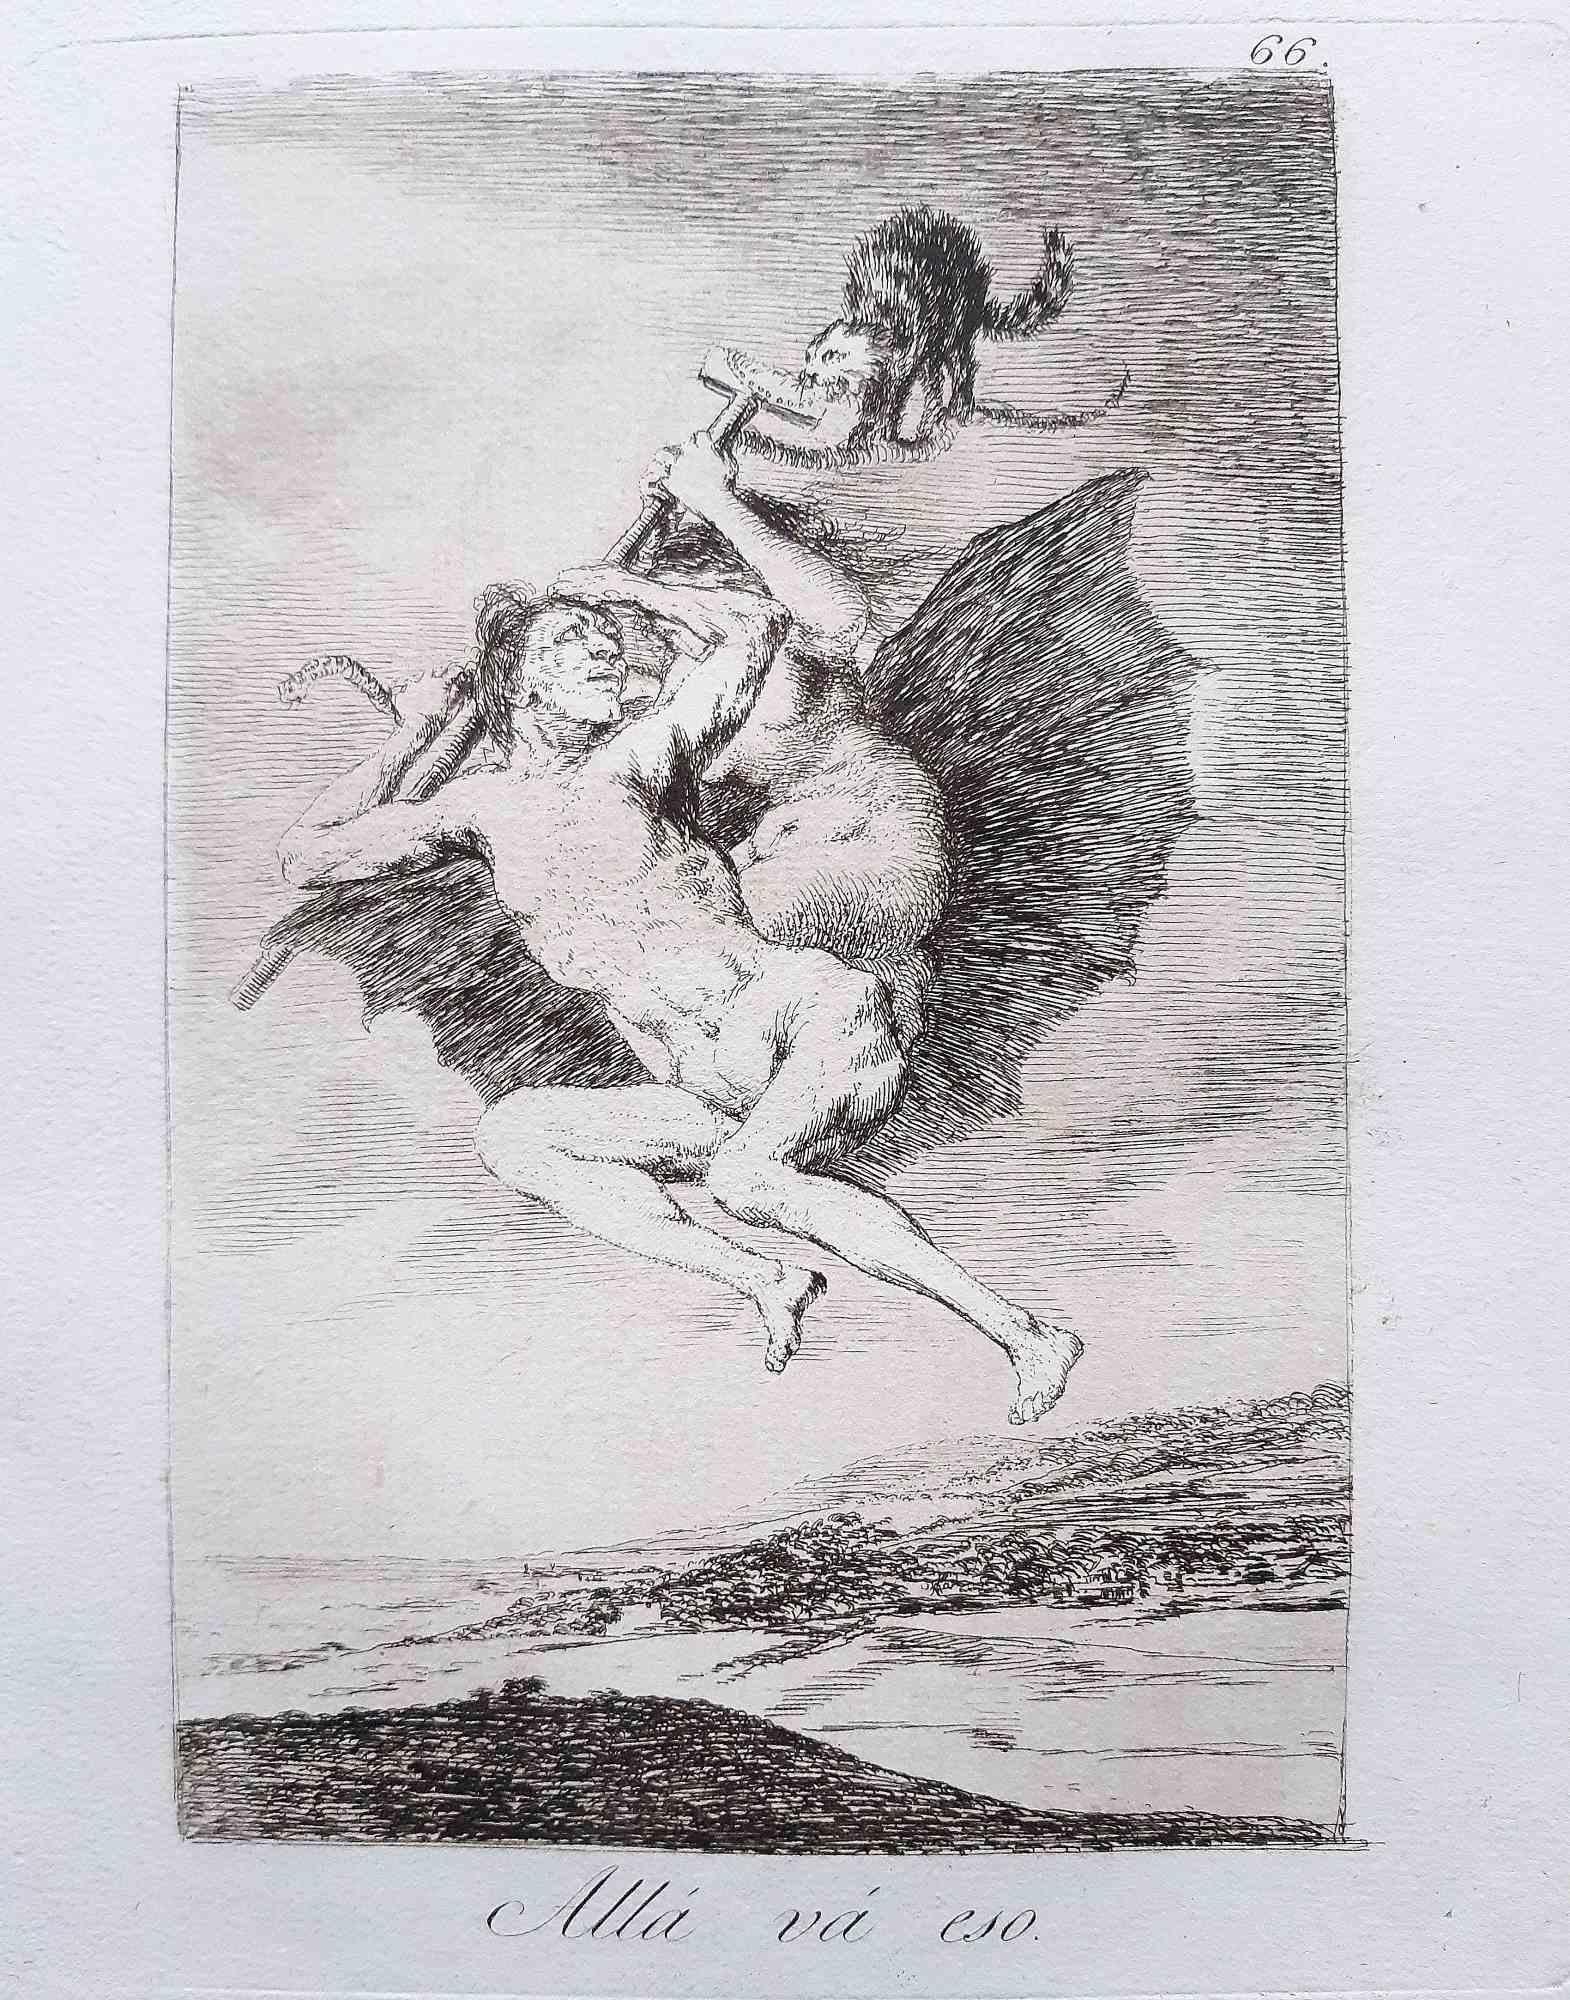 Allà Và Eso von Los Caprichos  ist ein originales Kunstwerk des Künstlers Francisco Goya, das 1799 zum ersten Mal veröffentlicht wurde.

Radierung und Aquatinta auf Papier.

Die Radierung ist Teil der Erstausgabe von "Los Caprichos", die 1799 von